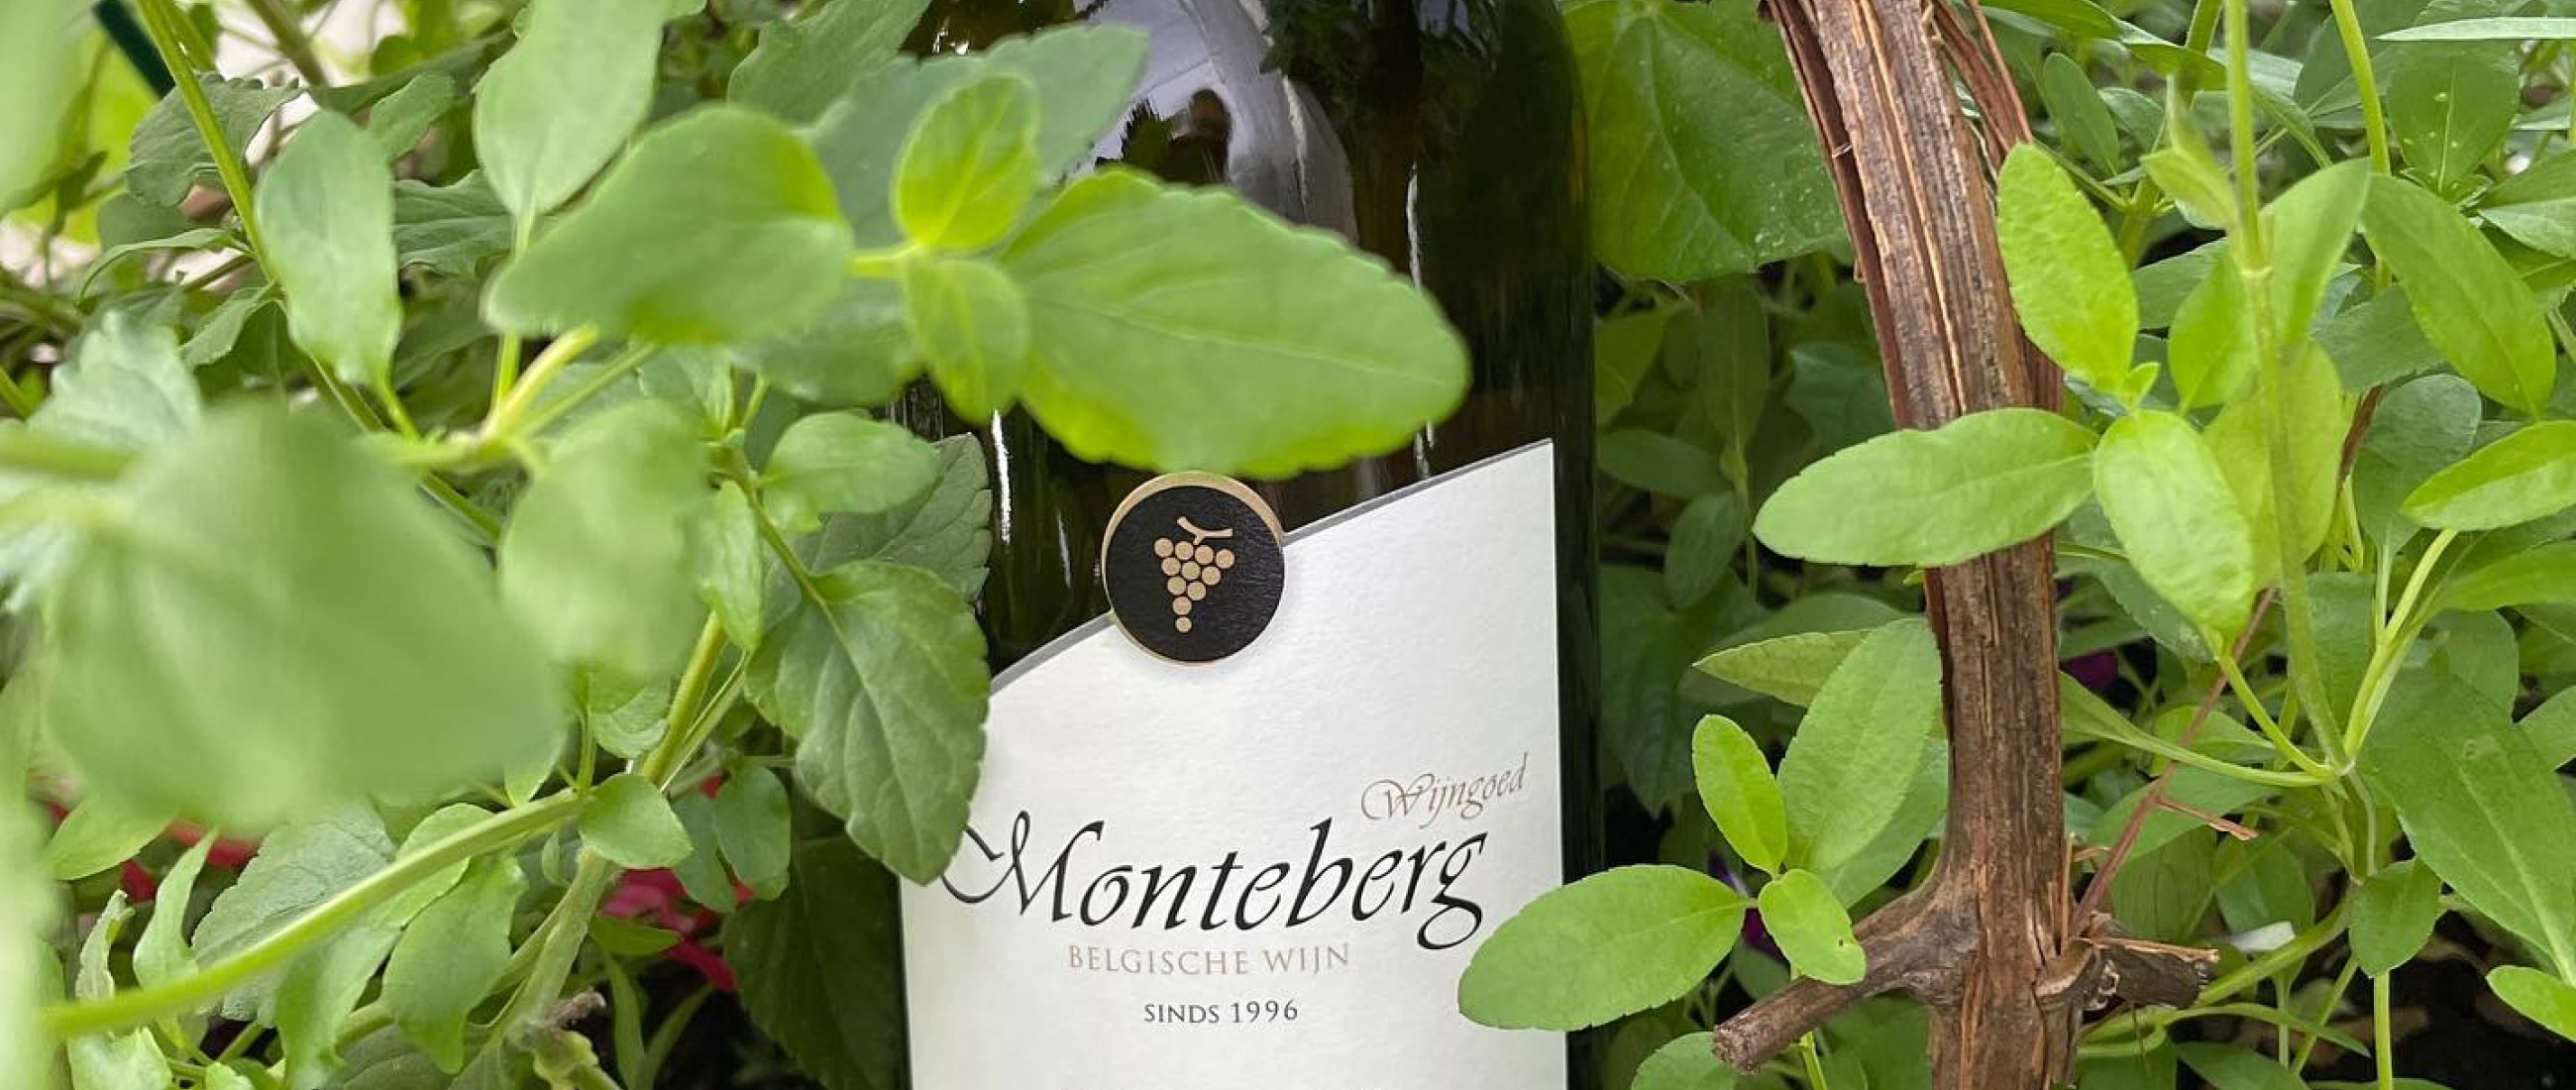 Nieuw topjaar in de wijnrekken: Monteberg Pinot Gris 2020 en Kerner 2020